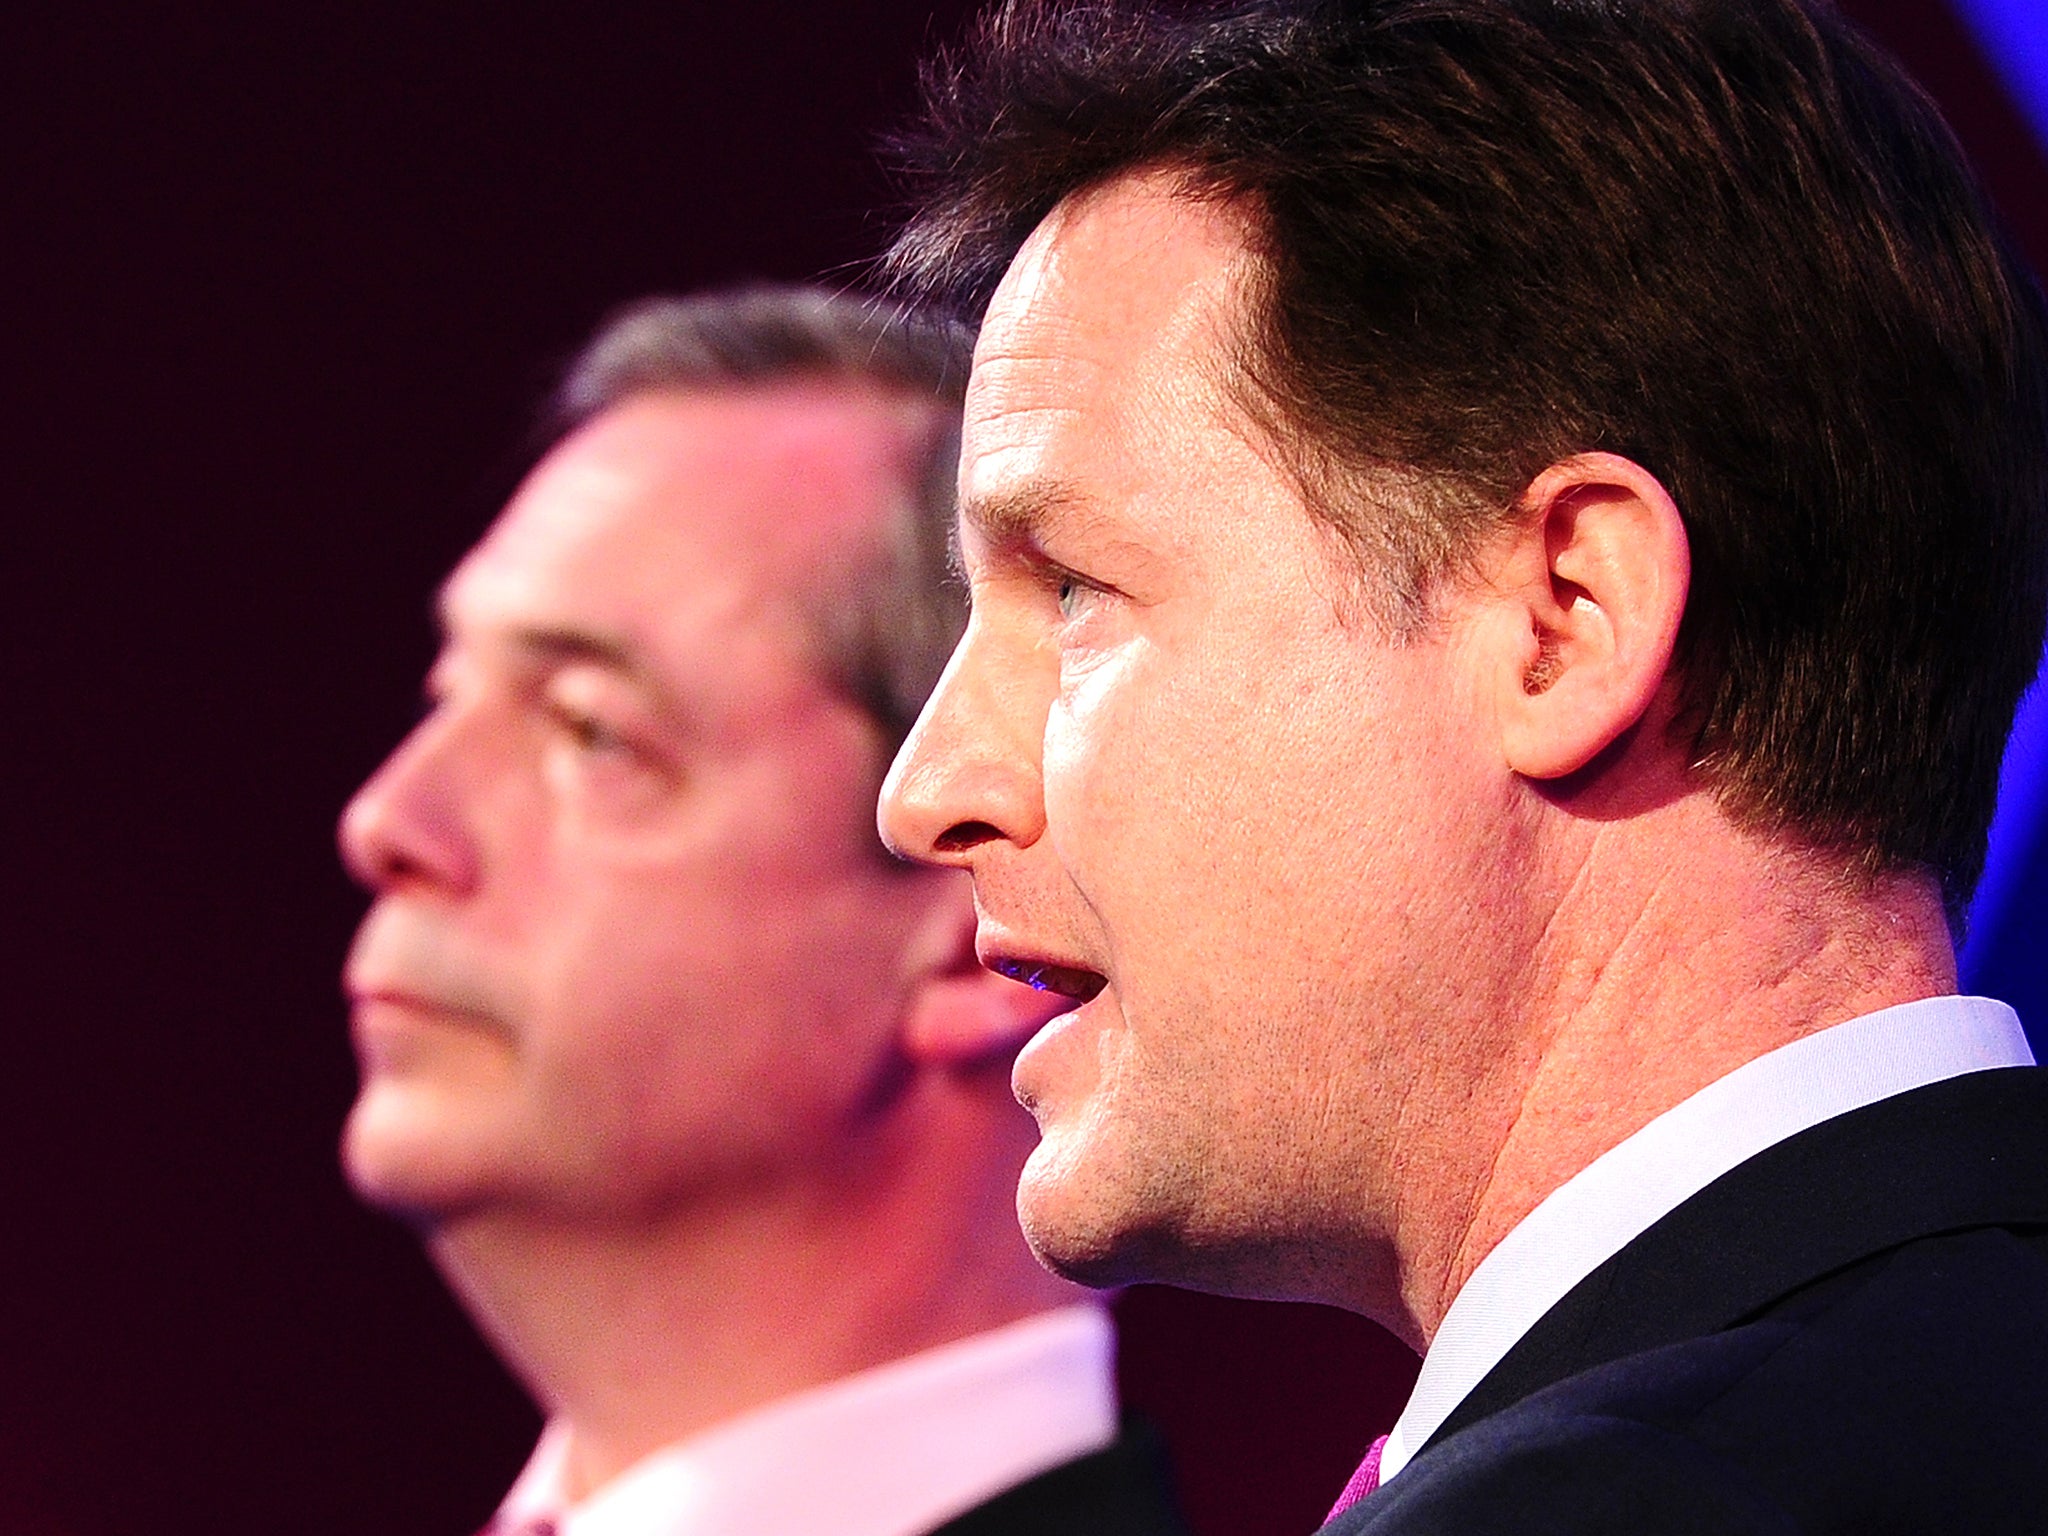 Deputy Prime Minister Nick Clegg and UKIP (UK Independence Party) leader Nigel Farage.